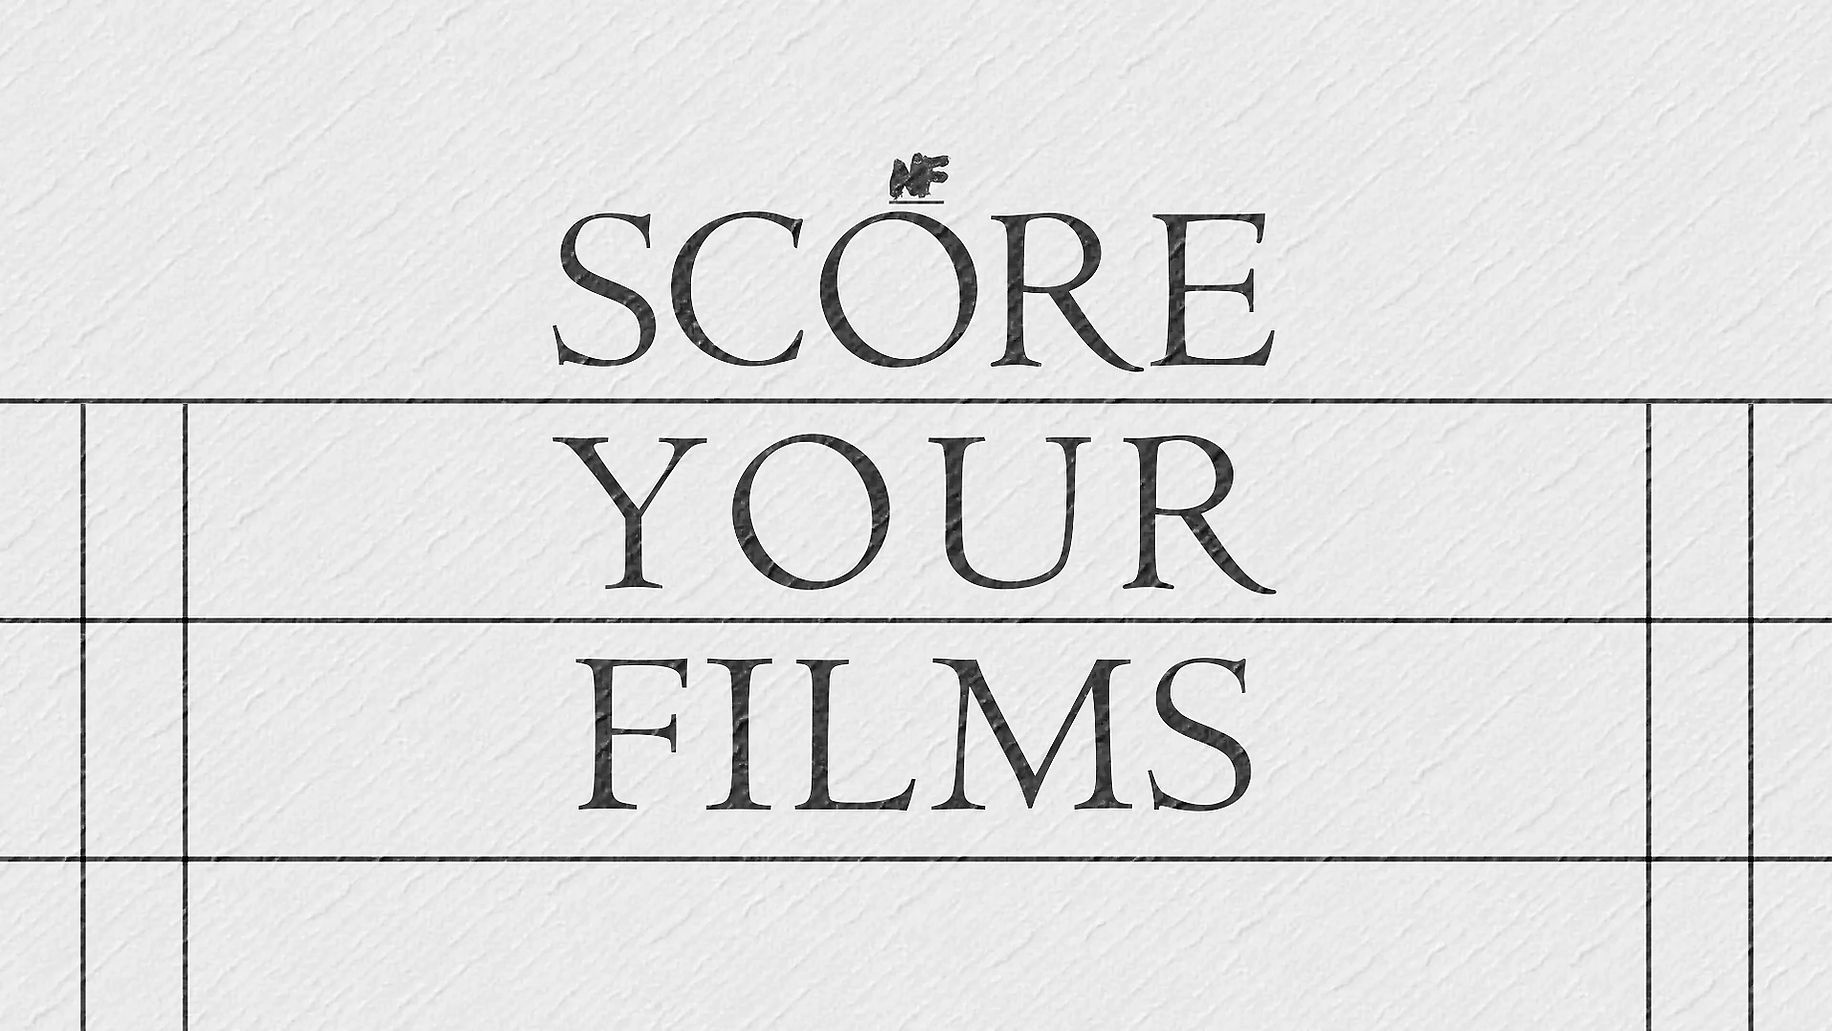 SCORE YOUR FILMS